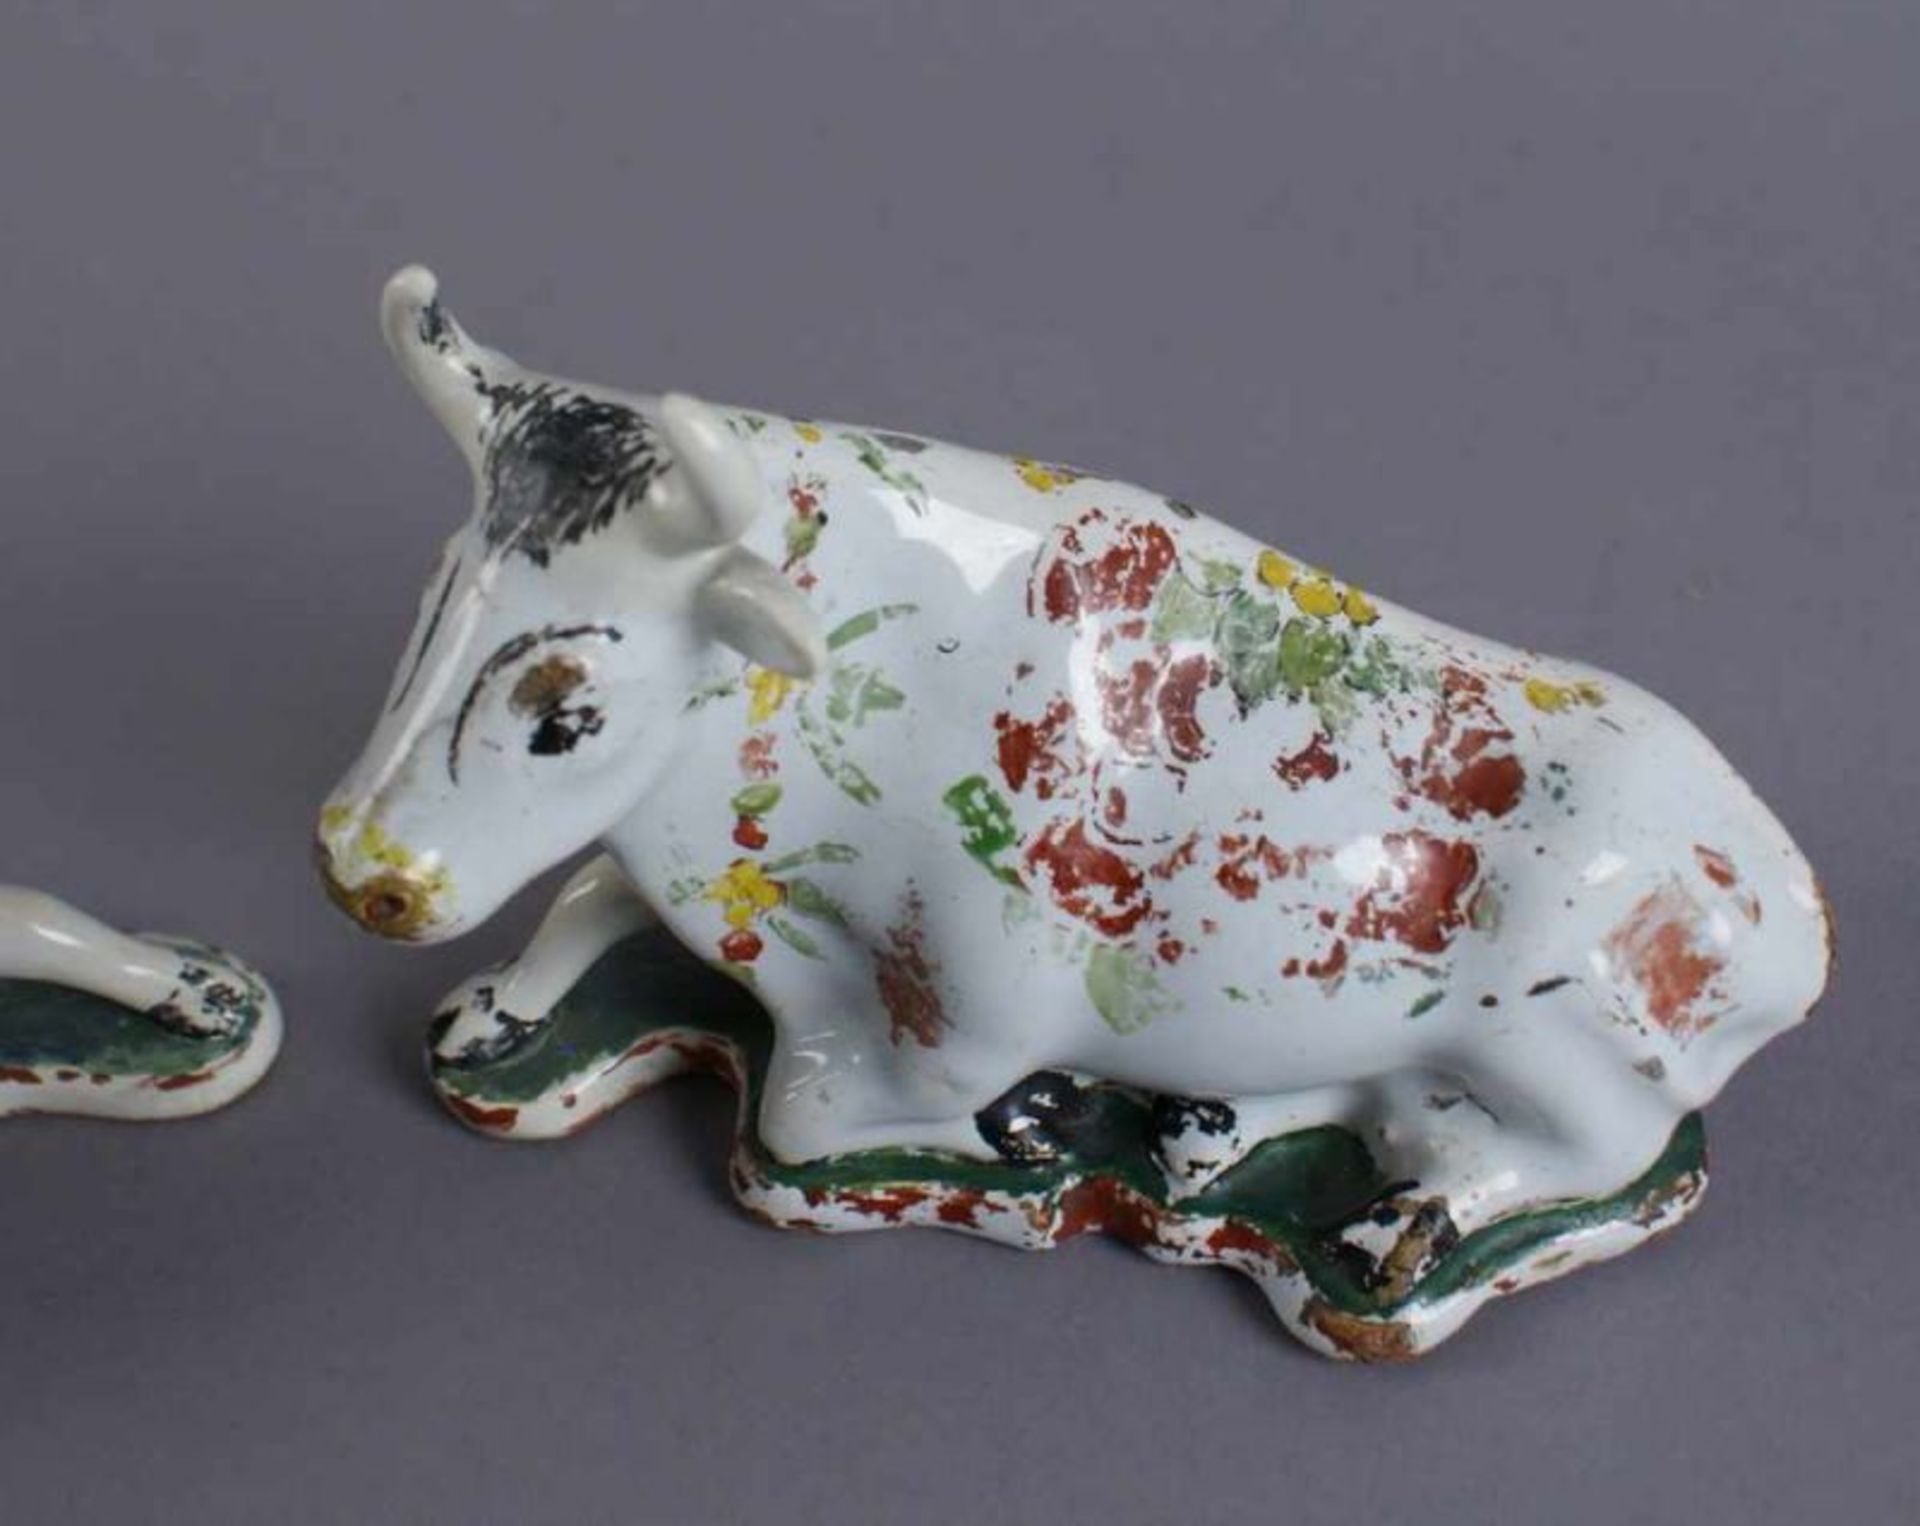 Zwei Kühe, Delft, bunt glasierte Keramik, 18. JH, alte Restaurierung, 10x15,5 x7 cm 20.17 % buyer' - Bild 3 aus 12